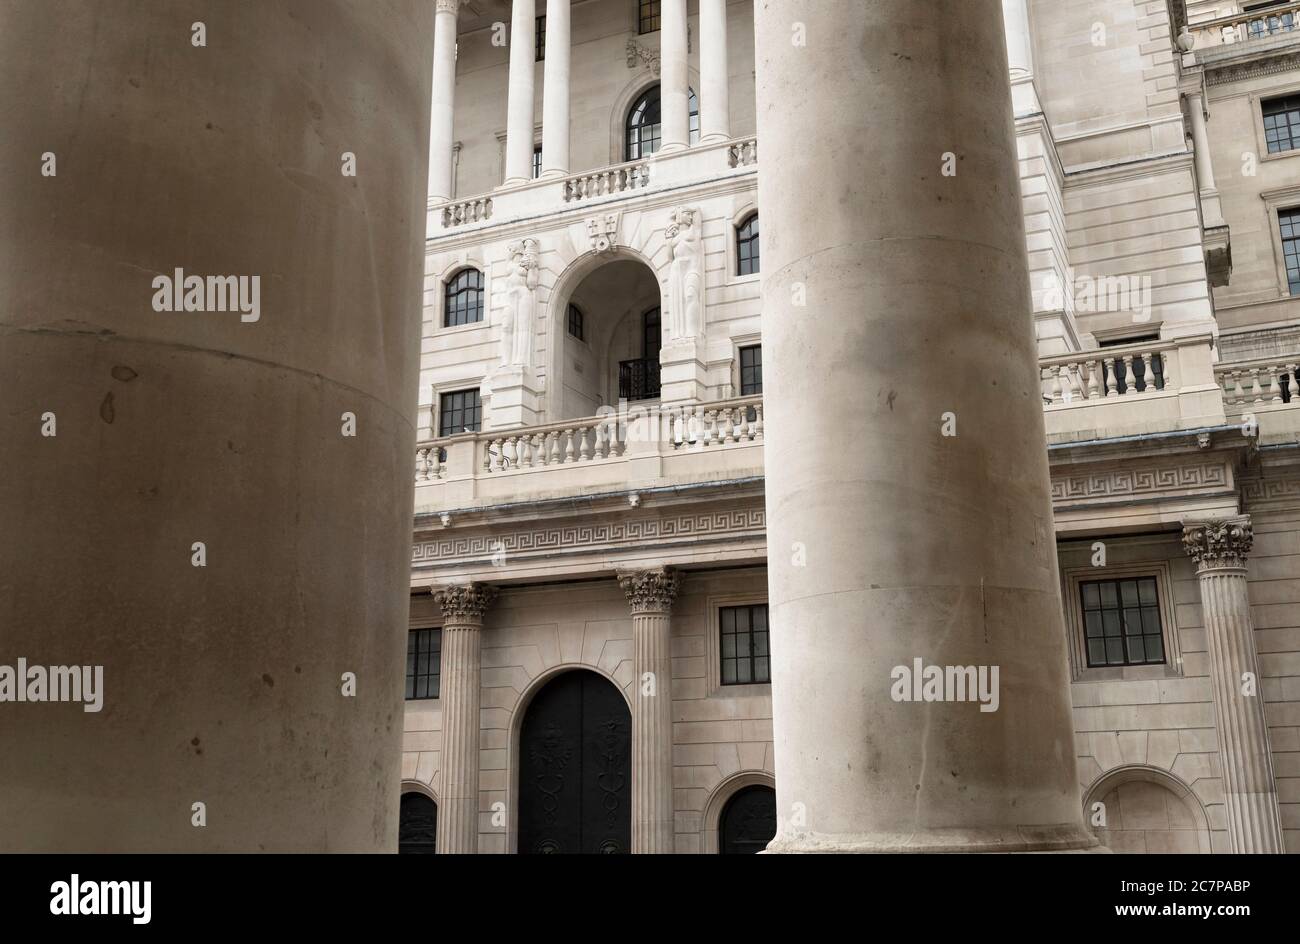 La Banque d'Angleterre est la banque centrale du Royaume-Uni. Parfois connue sous le nom de « Vieille Dame » de Threadneedle Street ». Threadneedle Street, Londres, Royaume-Uni 18 mars 2017 Banque D'Images